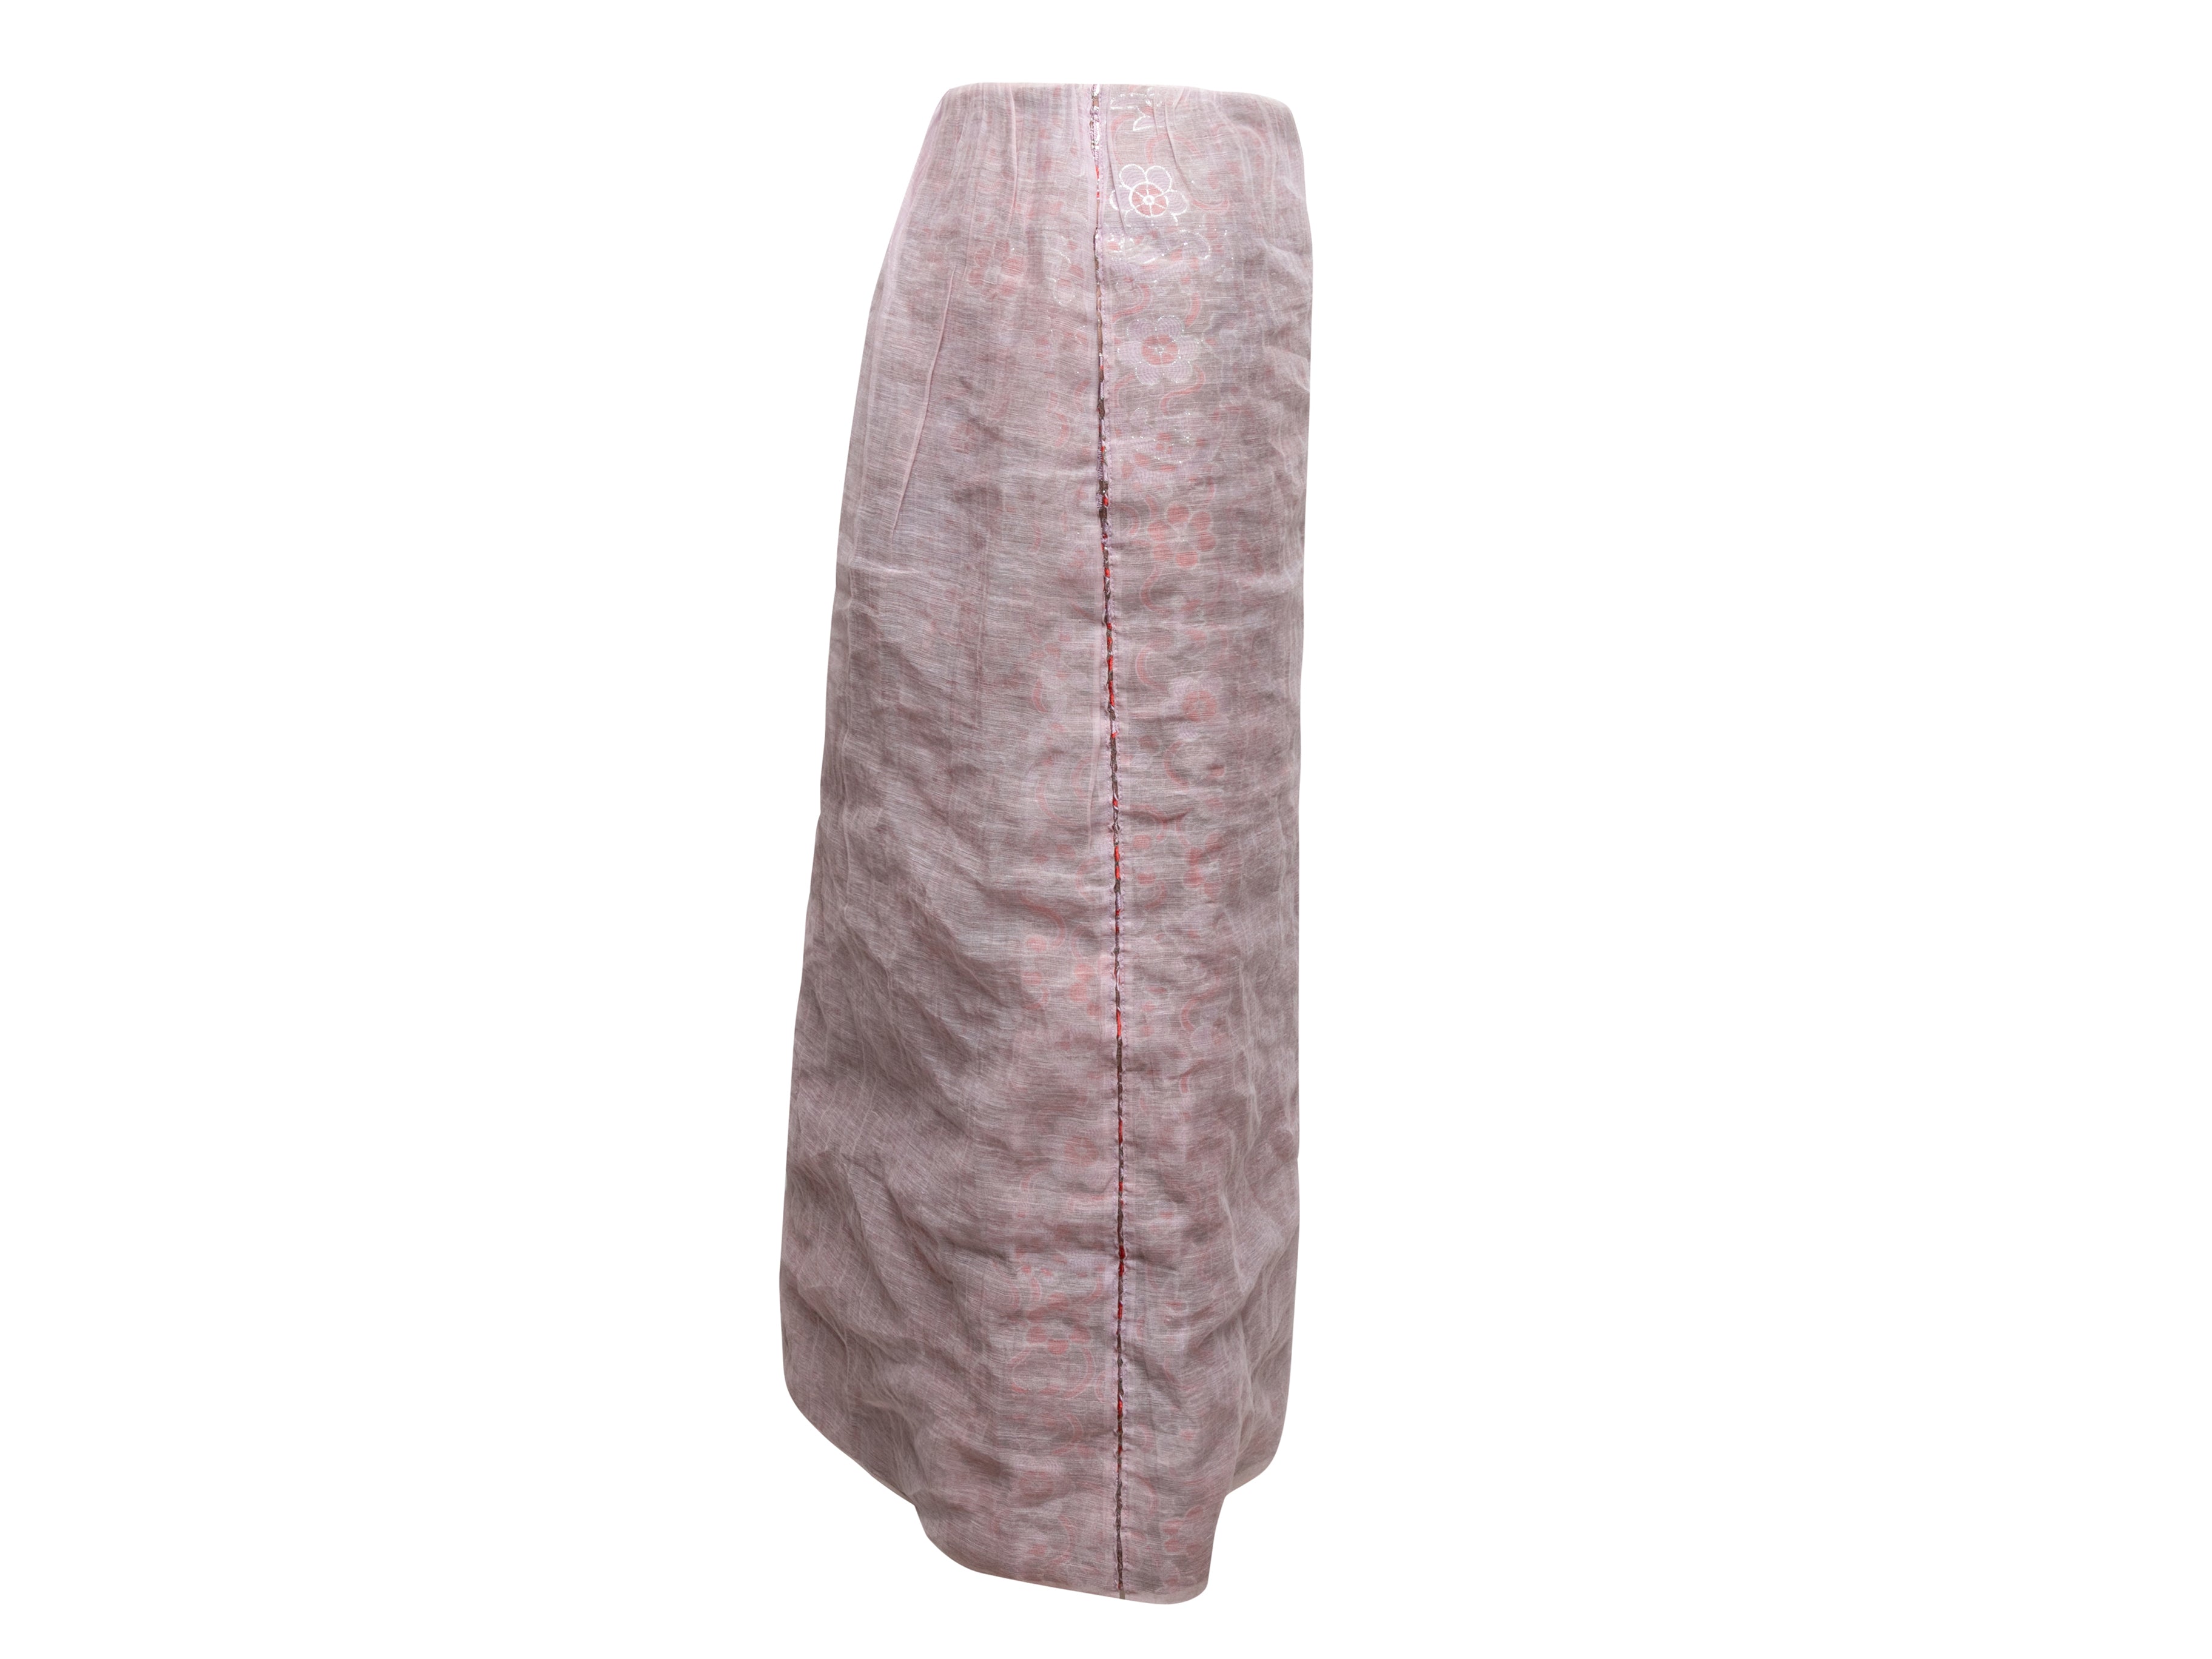 Light Pink & Multicolor Jacquard Midi Skirt Size 2